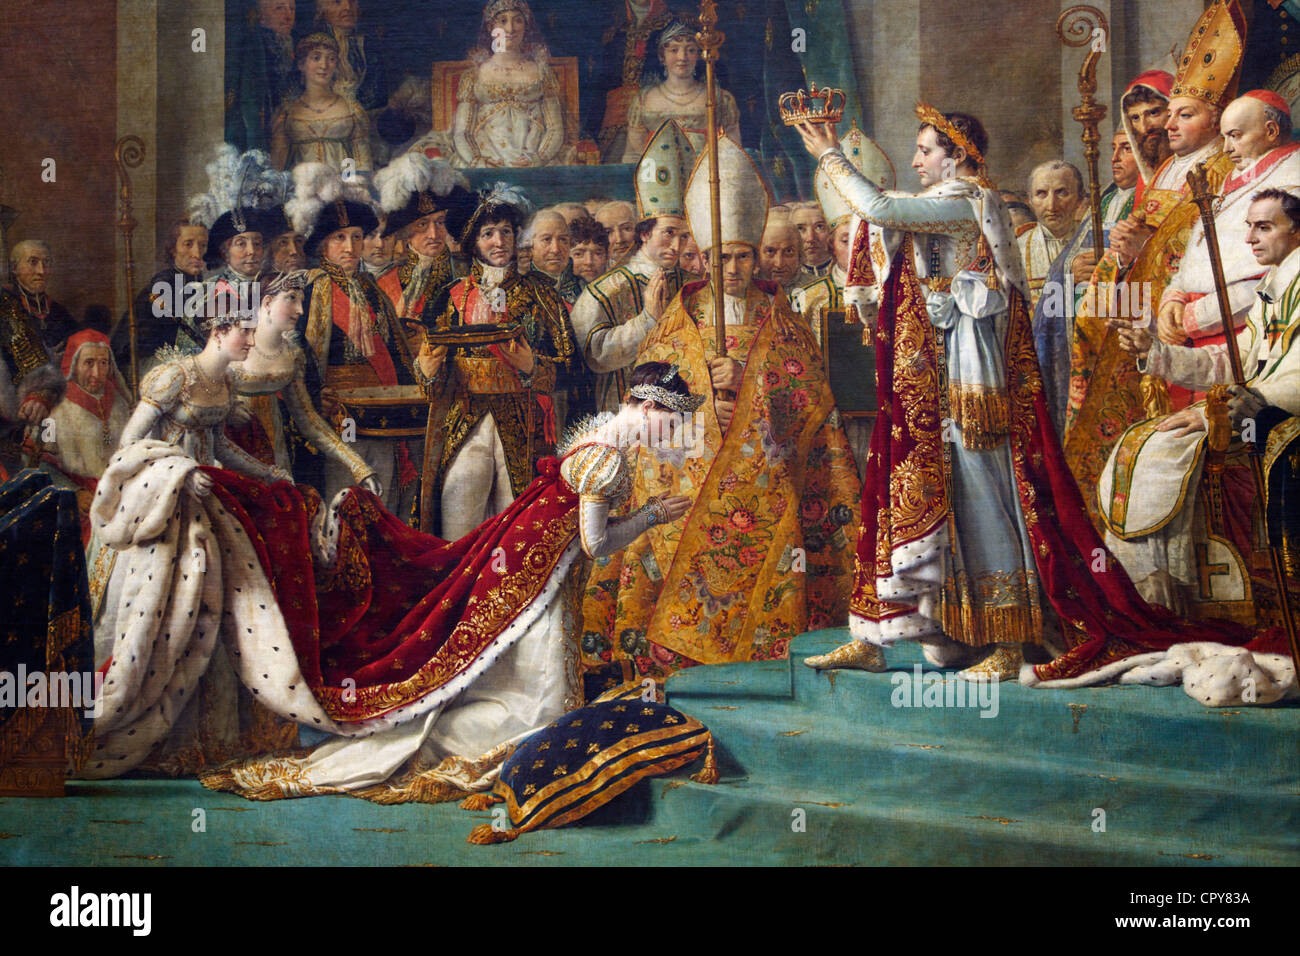 Détail de l'empereur Napoléon au couronnement de l'Impératrice Joséphine à la Cathédrale Notre Dame, 2 décembre 1804 par Louis David Banque D'Images